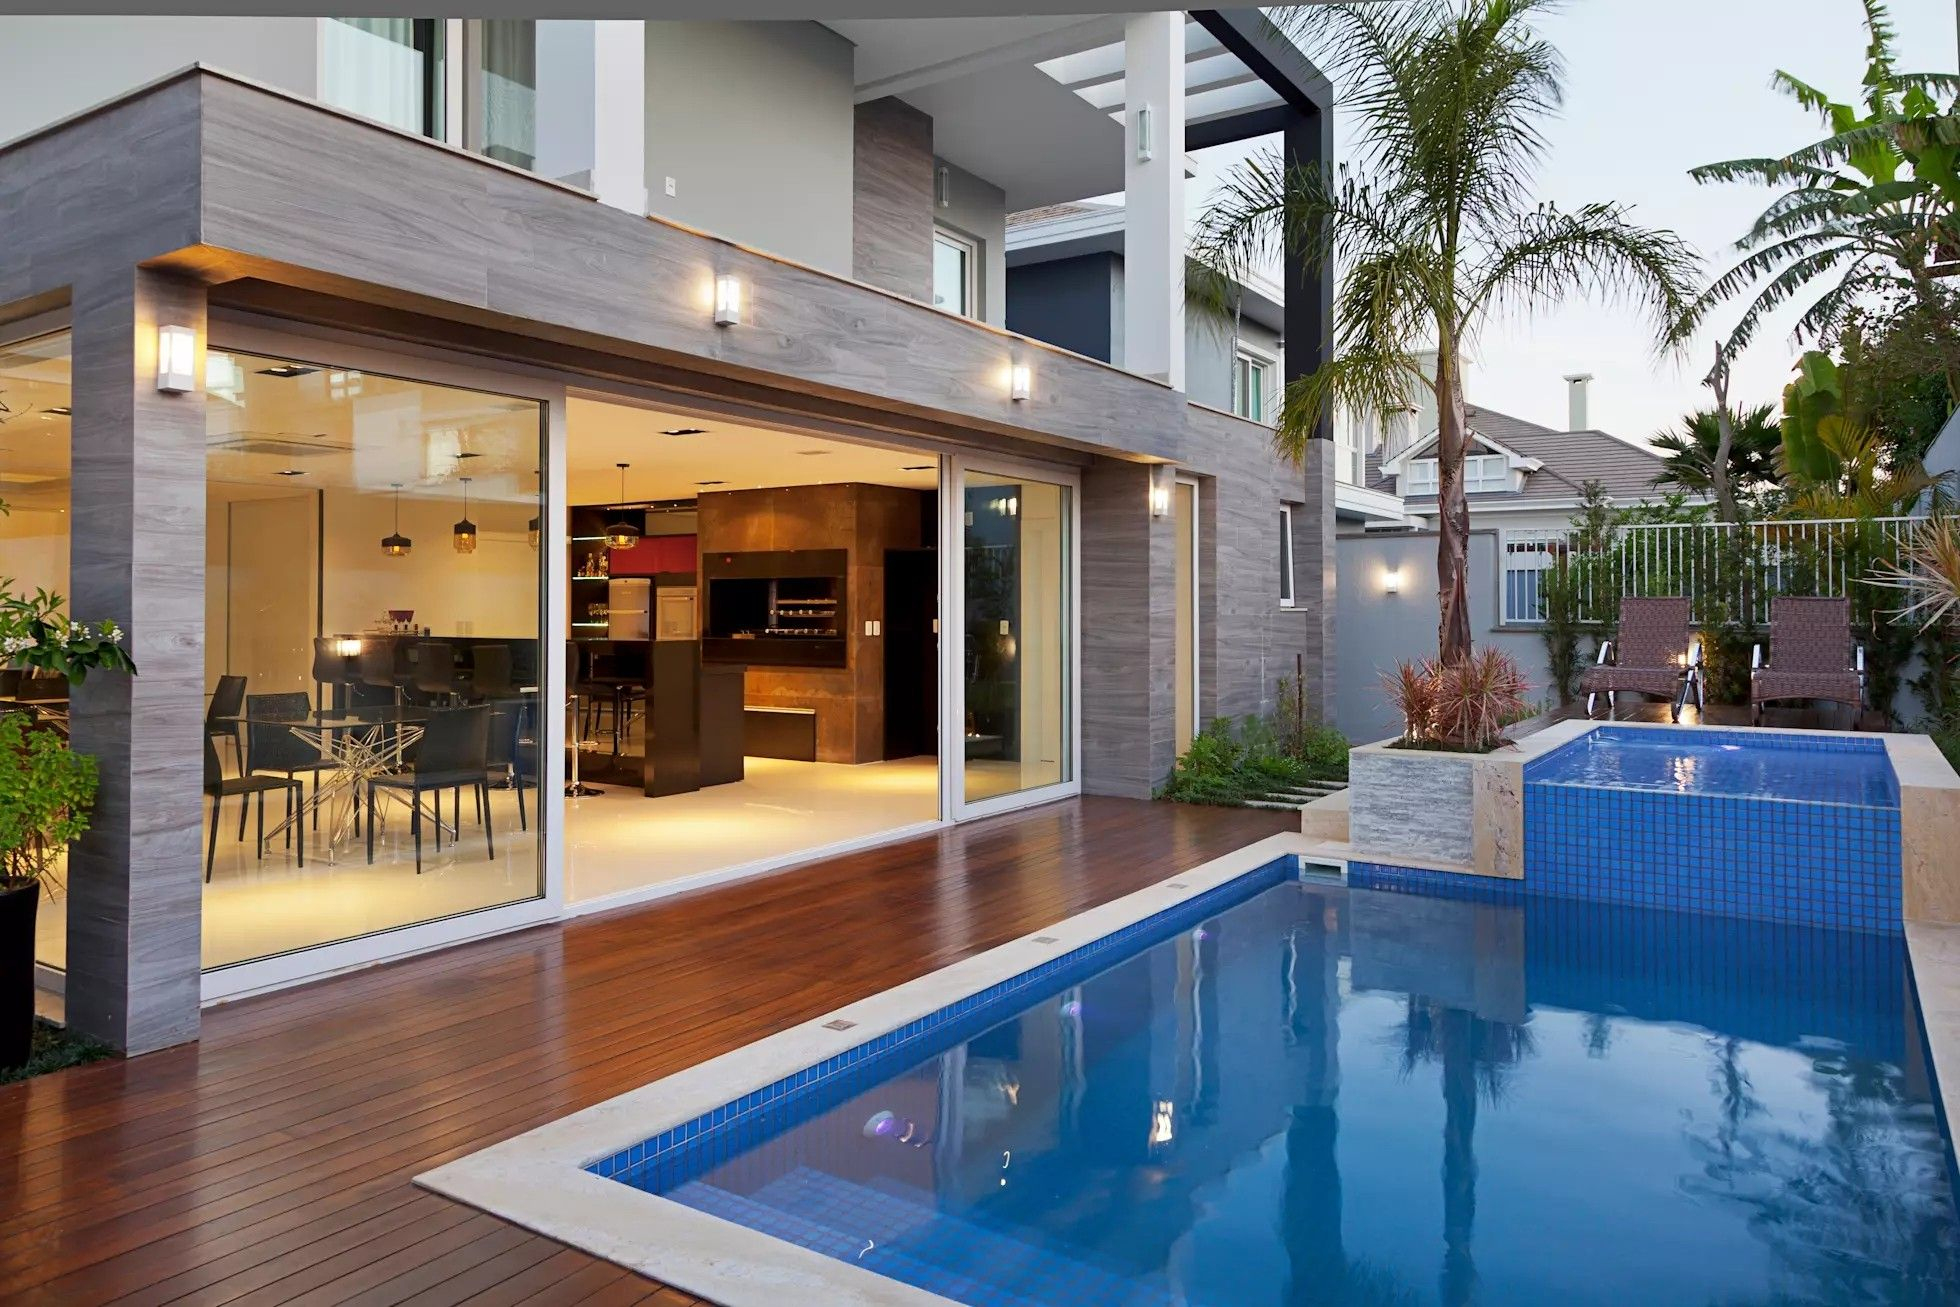 Avec Peu De Terrasse ,piscine Possible | Architecture House ... intérieur Idees Pool House Piscine